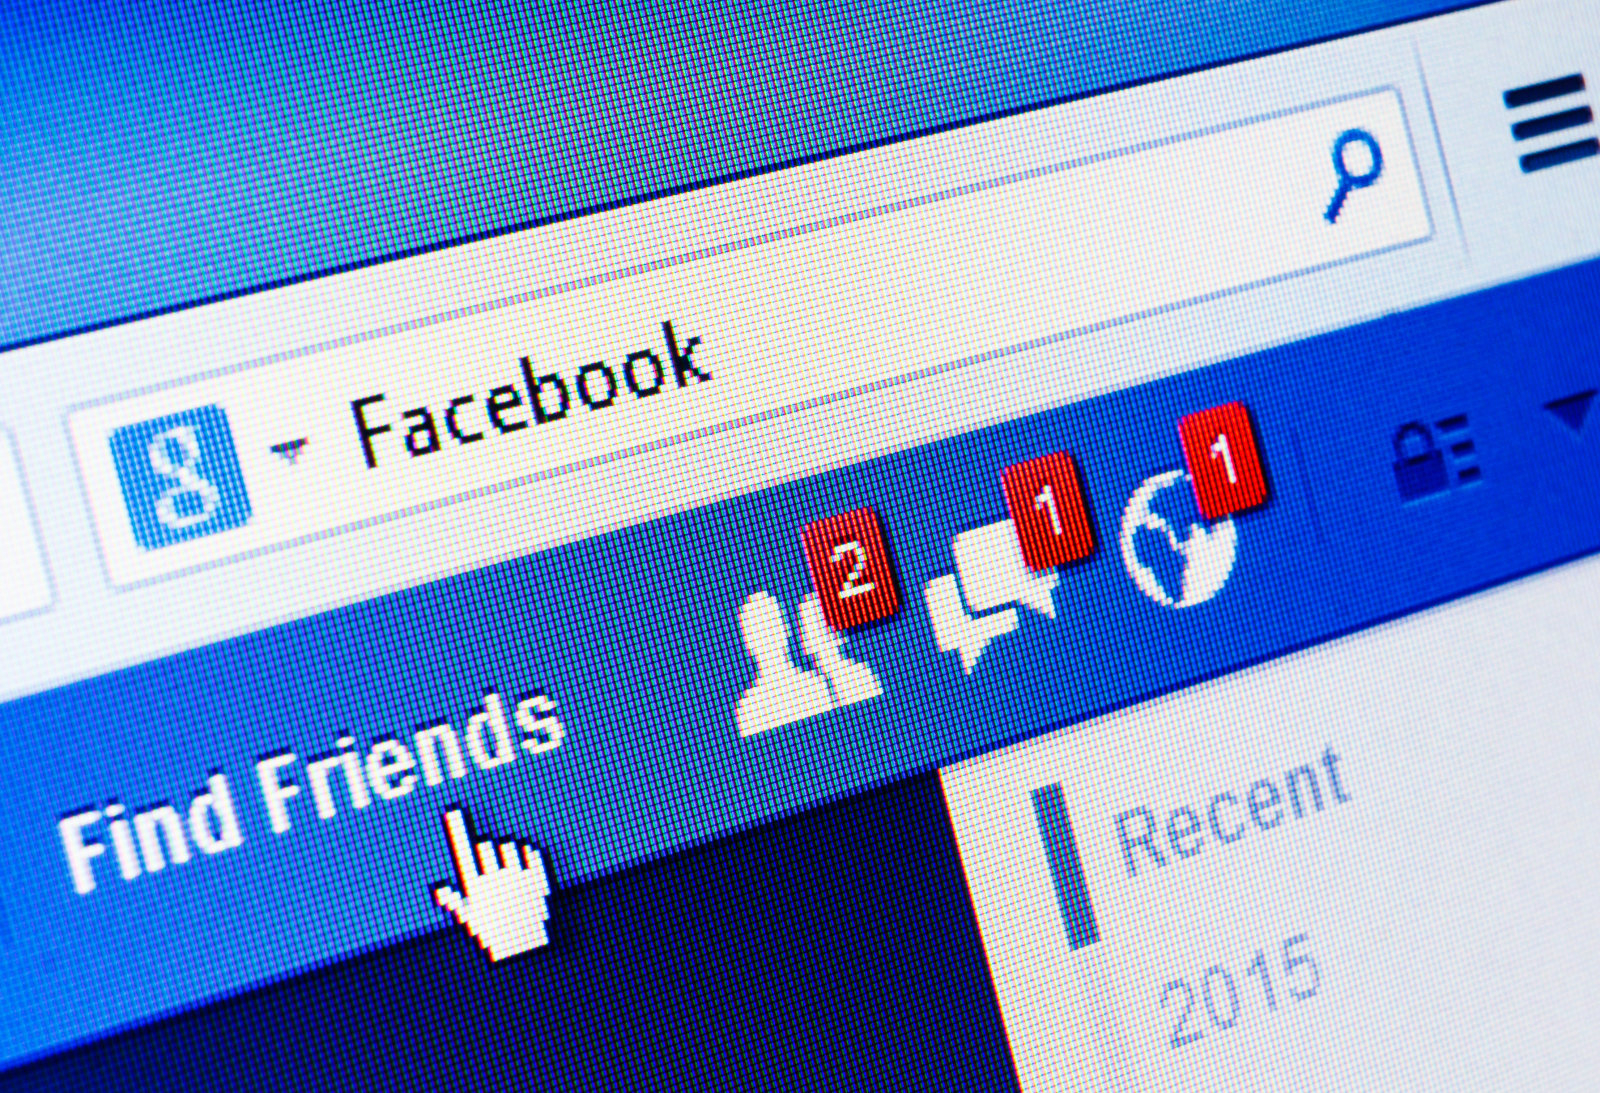 นักวิจัยค้นพบ หากเจอเรื่องเลวร้ายบน Facebook ก็จะส่งผลไปยังชีวิตจริงด้วย